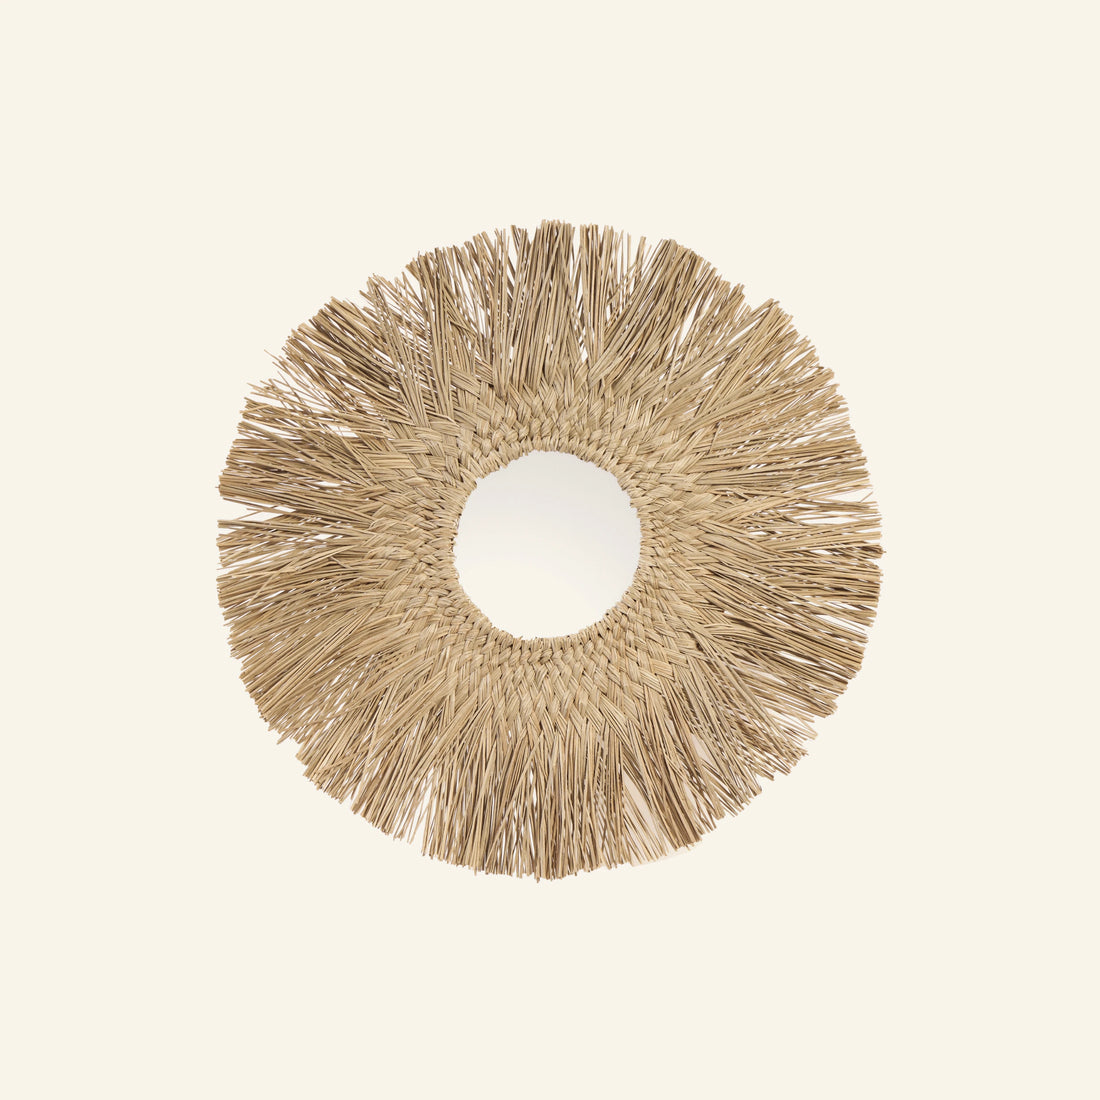 Miroir en fibres de palmier - CRUSOË